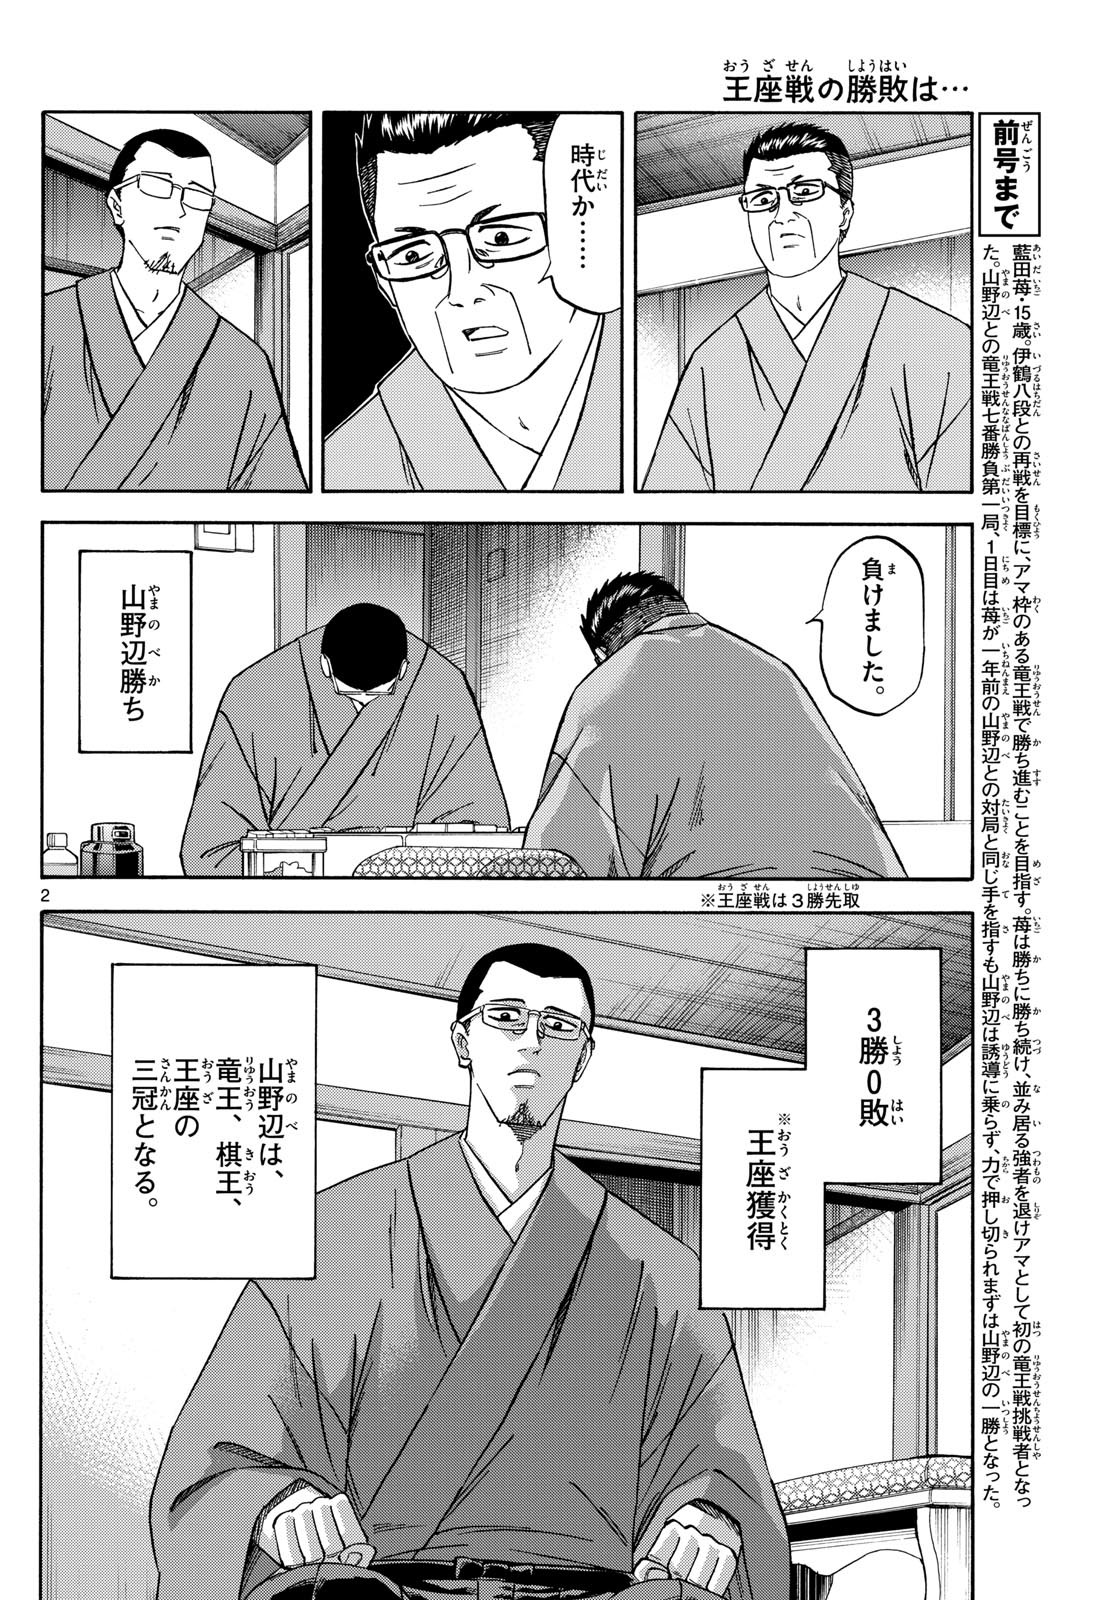 Ryu-to-Ichigo - Chapter 156 - Page 2